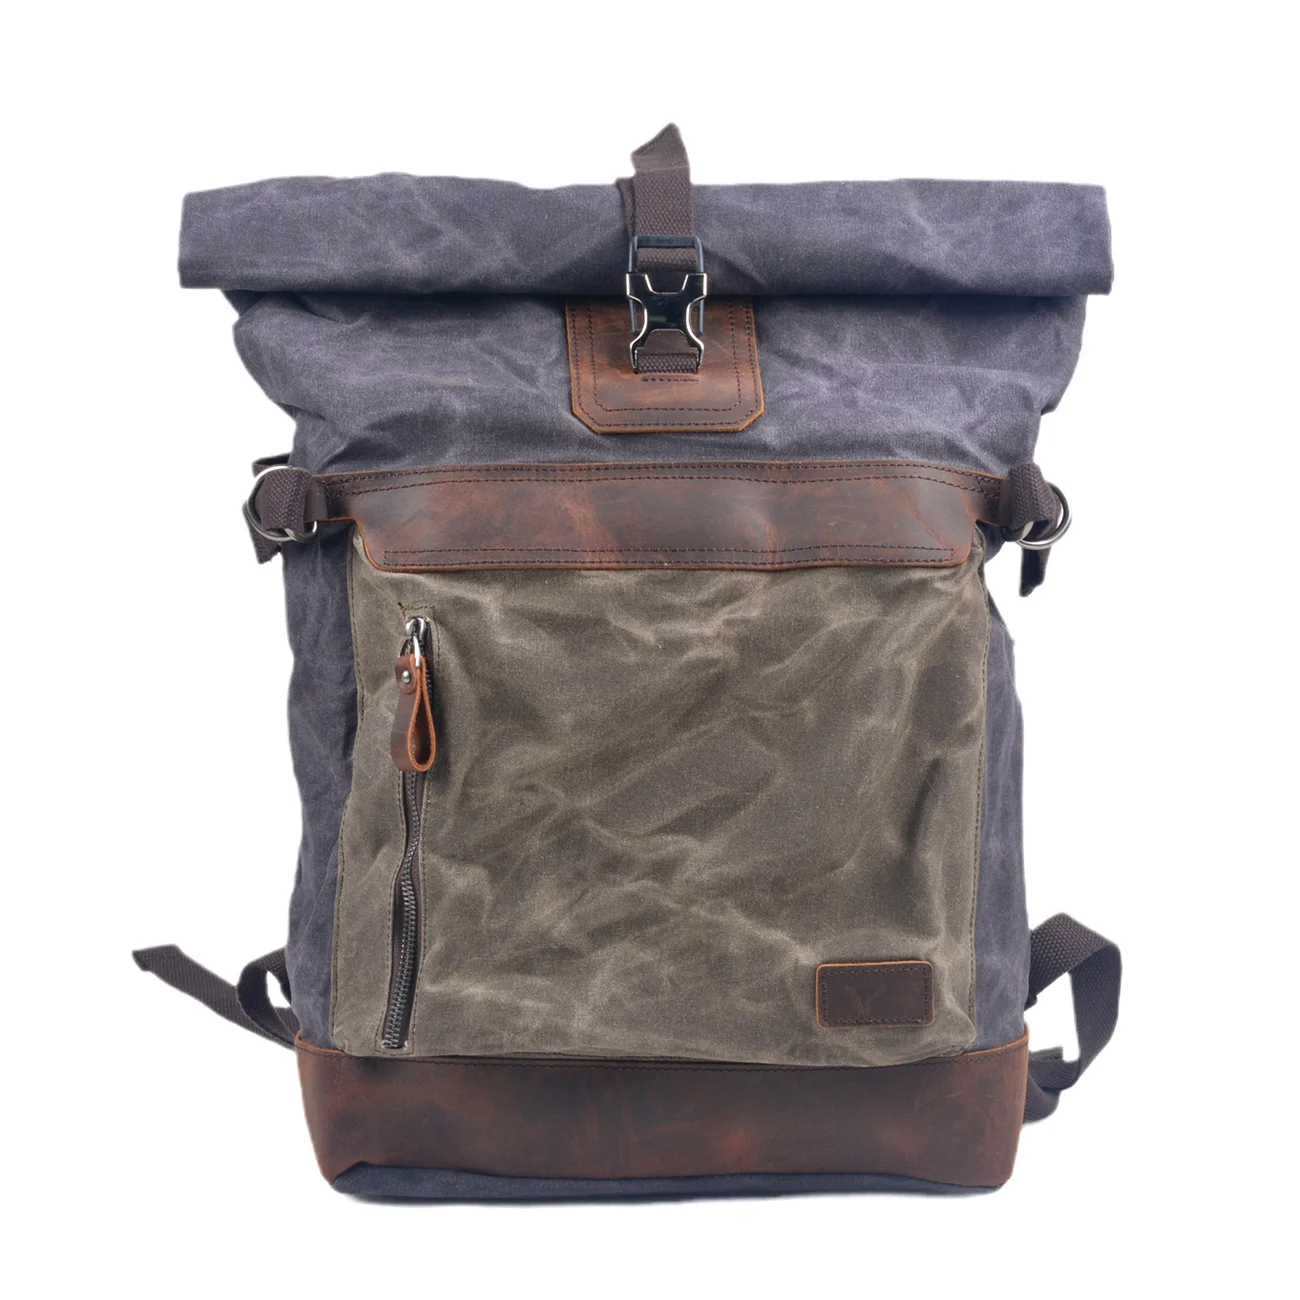 

Мужской холщовый рюкзак с масляным воском, вместительная водонепроницаемая сумка для альпинизма, отдыха, путешествий, походов